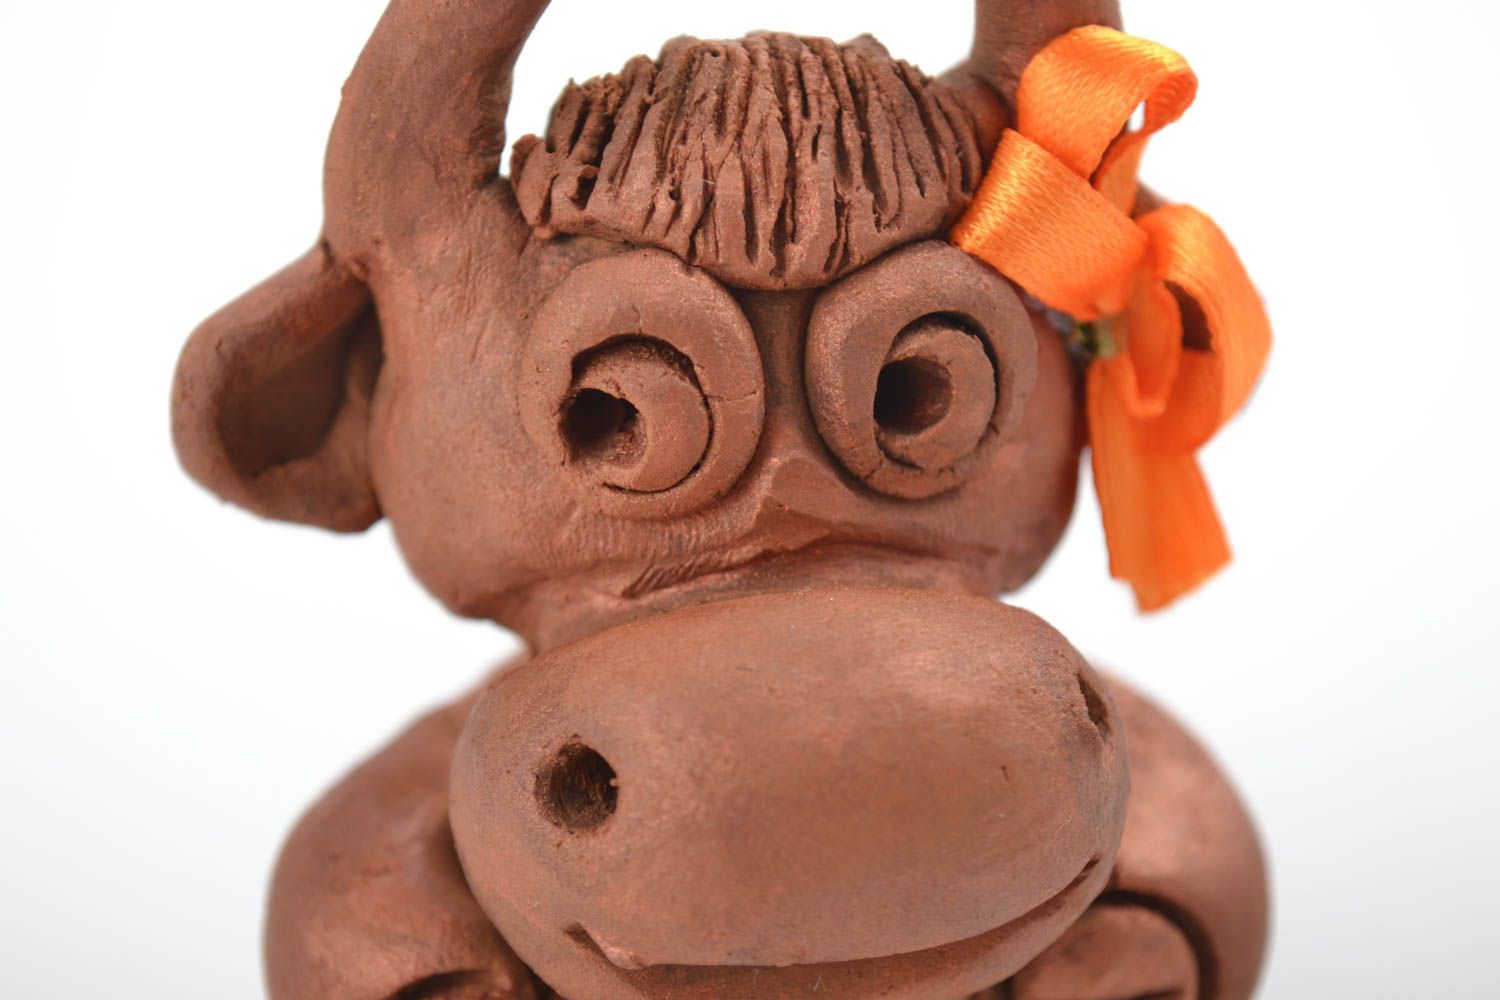 Ceramic figurine handmade animal figurines handmade home decor souvenir ideas photo 5